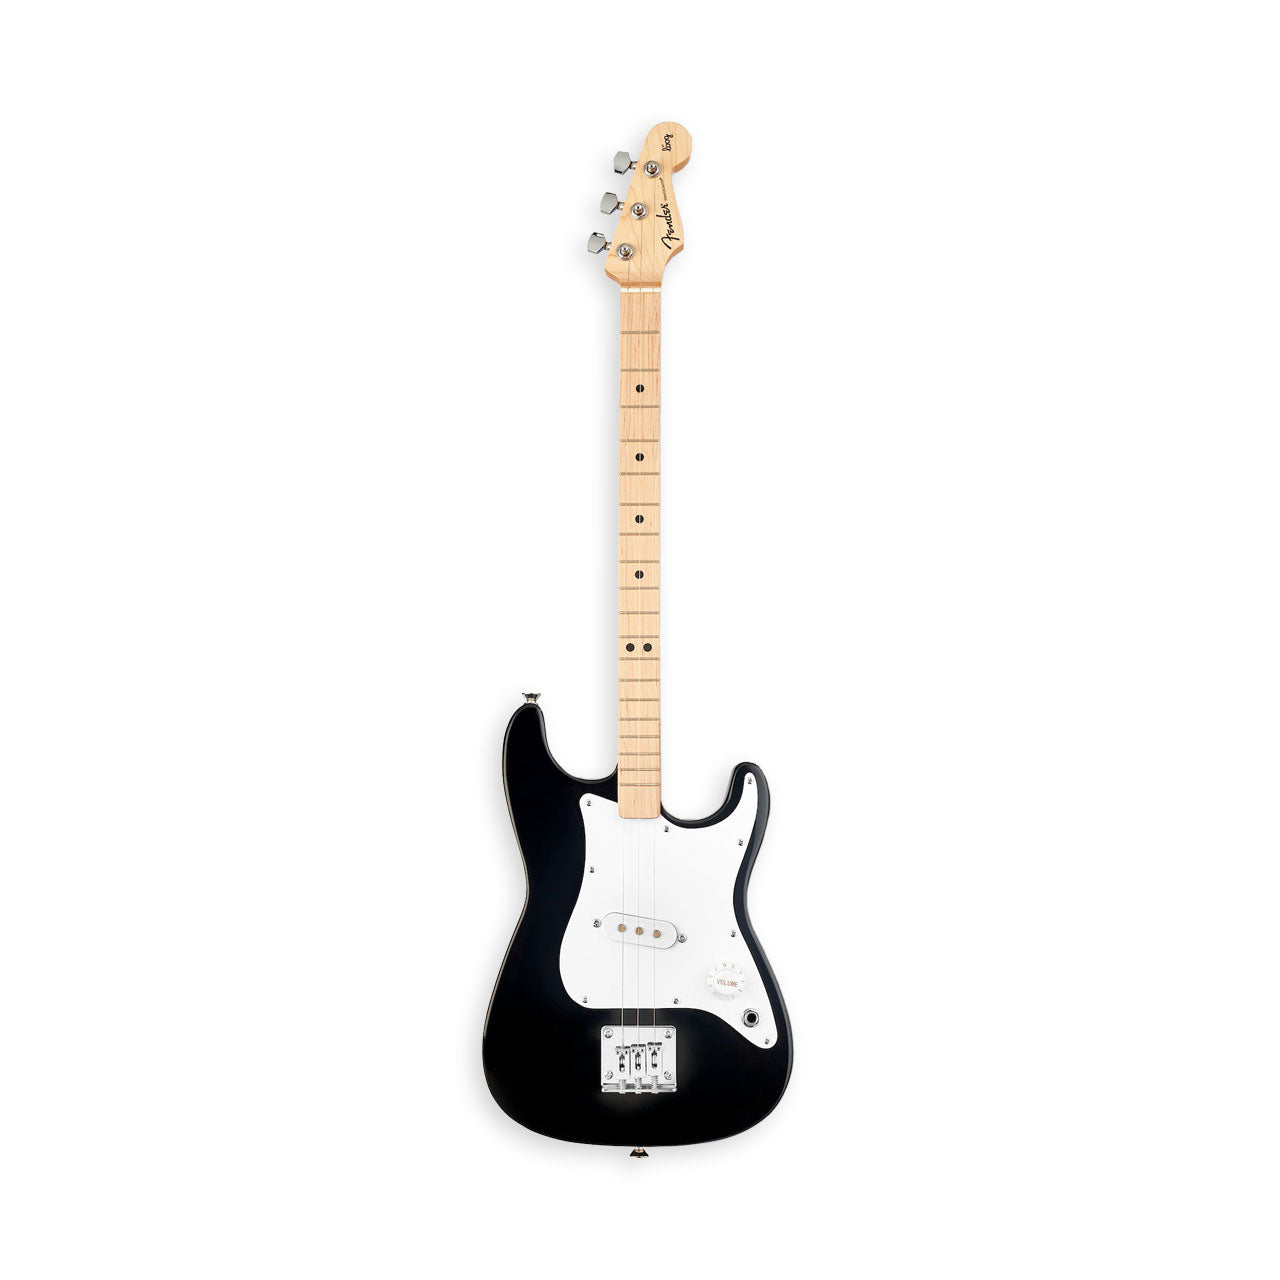 Loog x Fender Stratocaster Electric Guitar Bundle